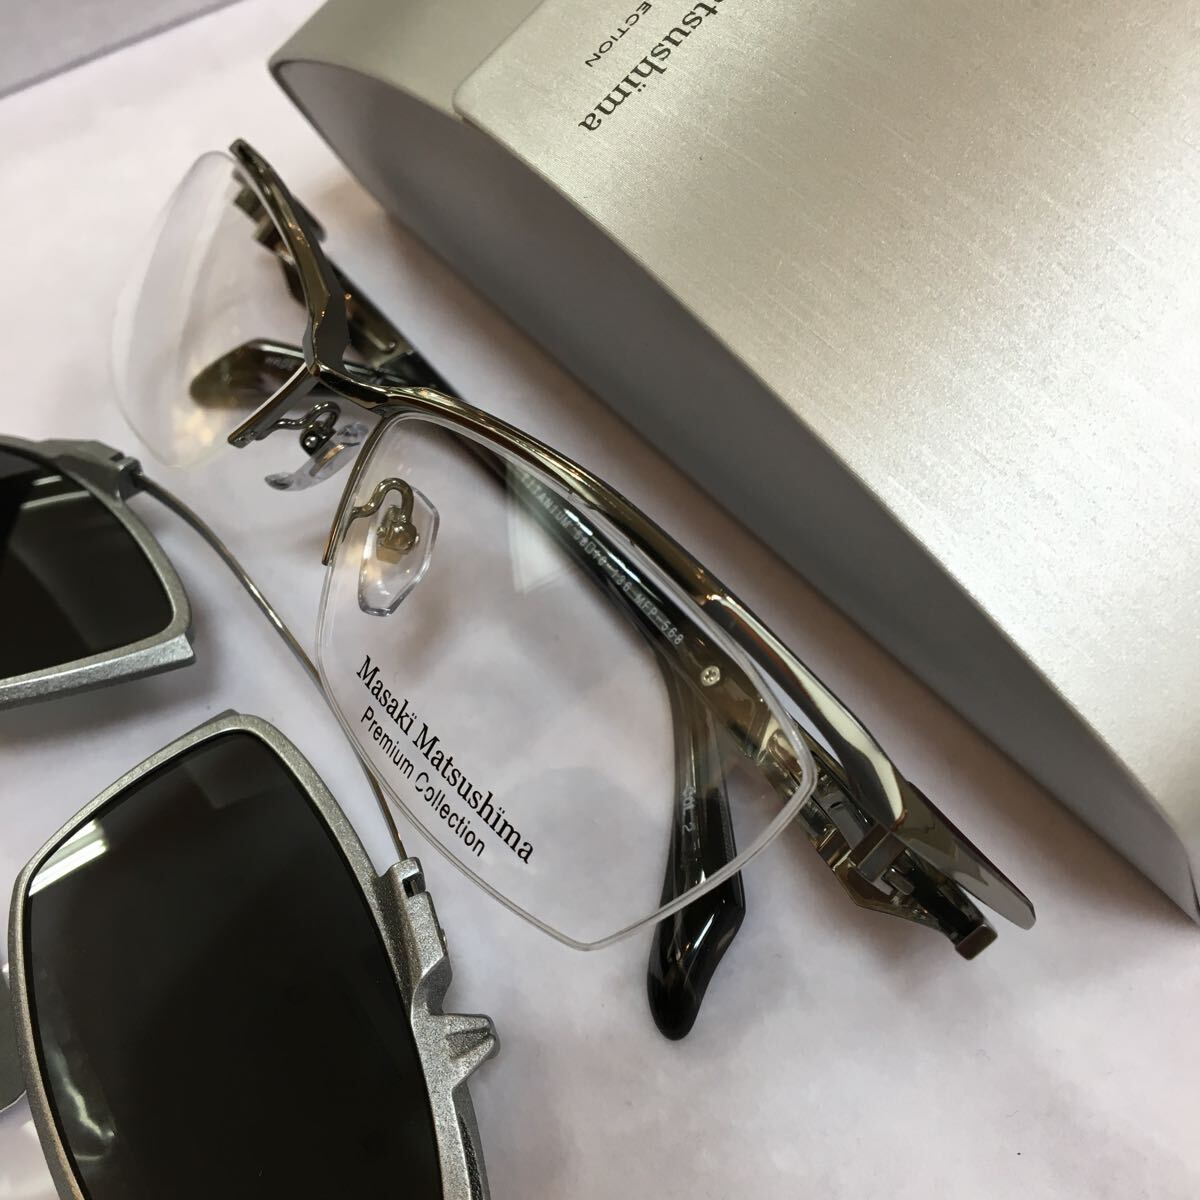 限定モデル 限定品 Masaki Matsushima マサキマツシマ プレミアムコレクション MFP-568 MADE IN JAPAN 高品質 日本製 メガネ 眼鏡 MFP 568_画像6